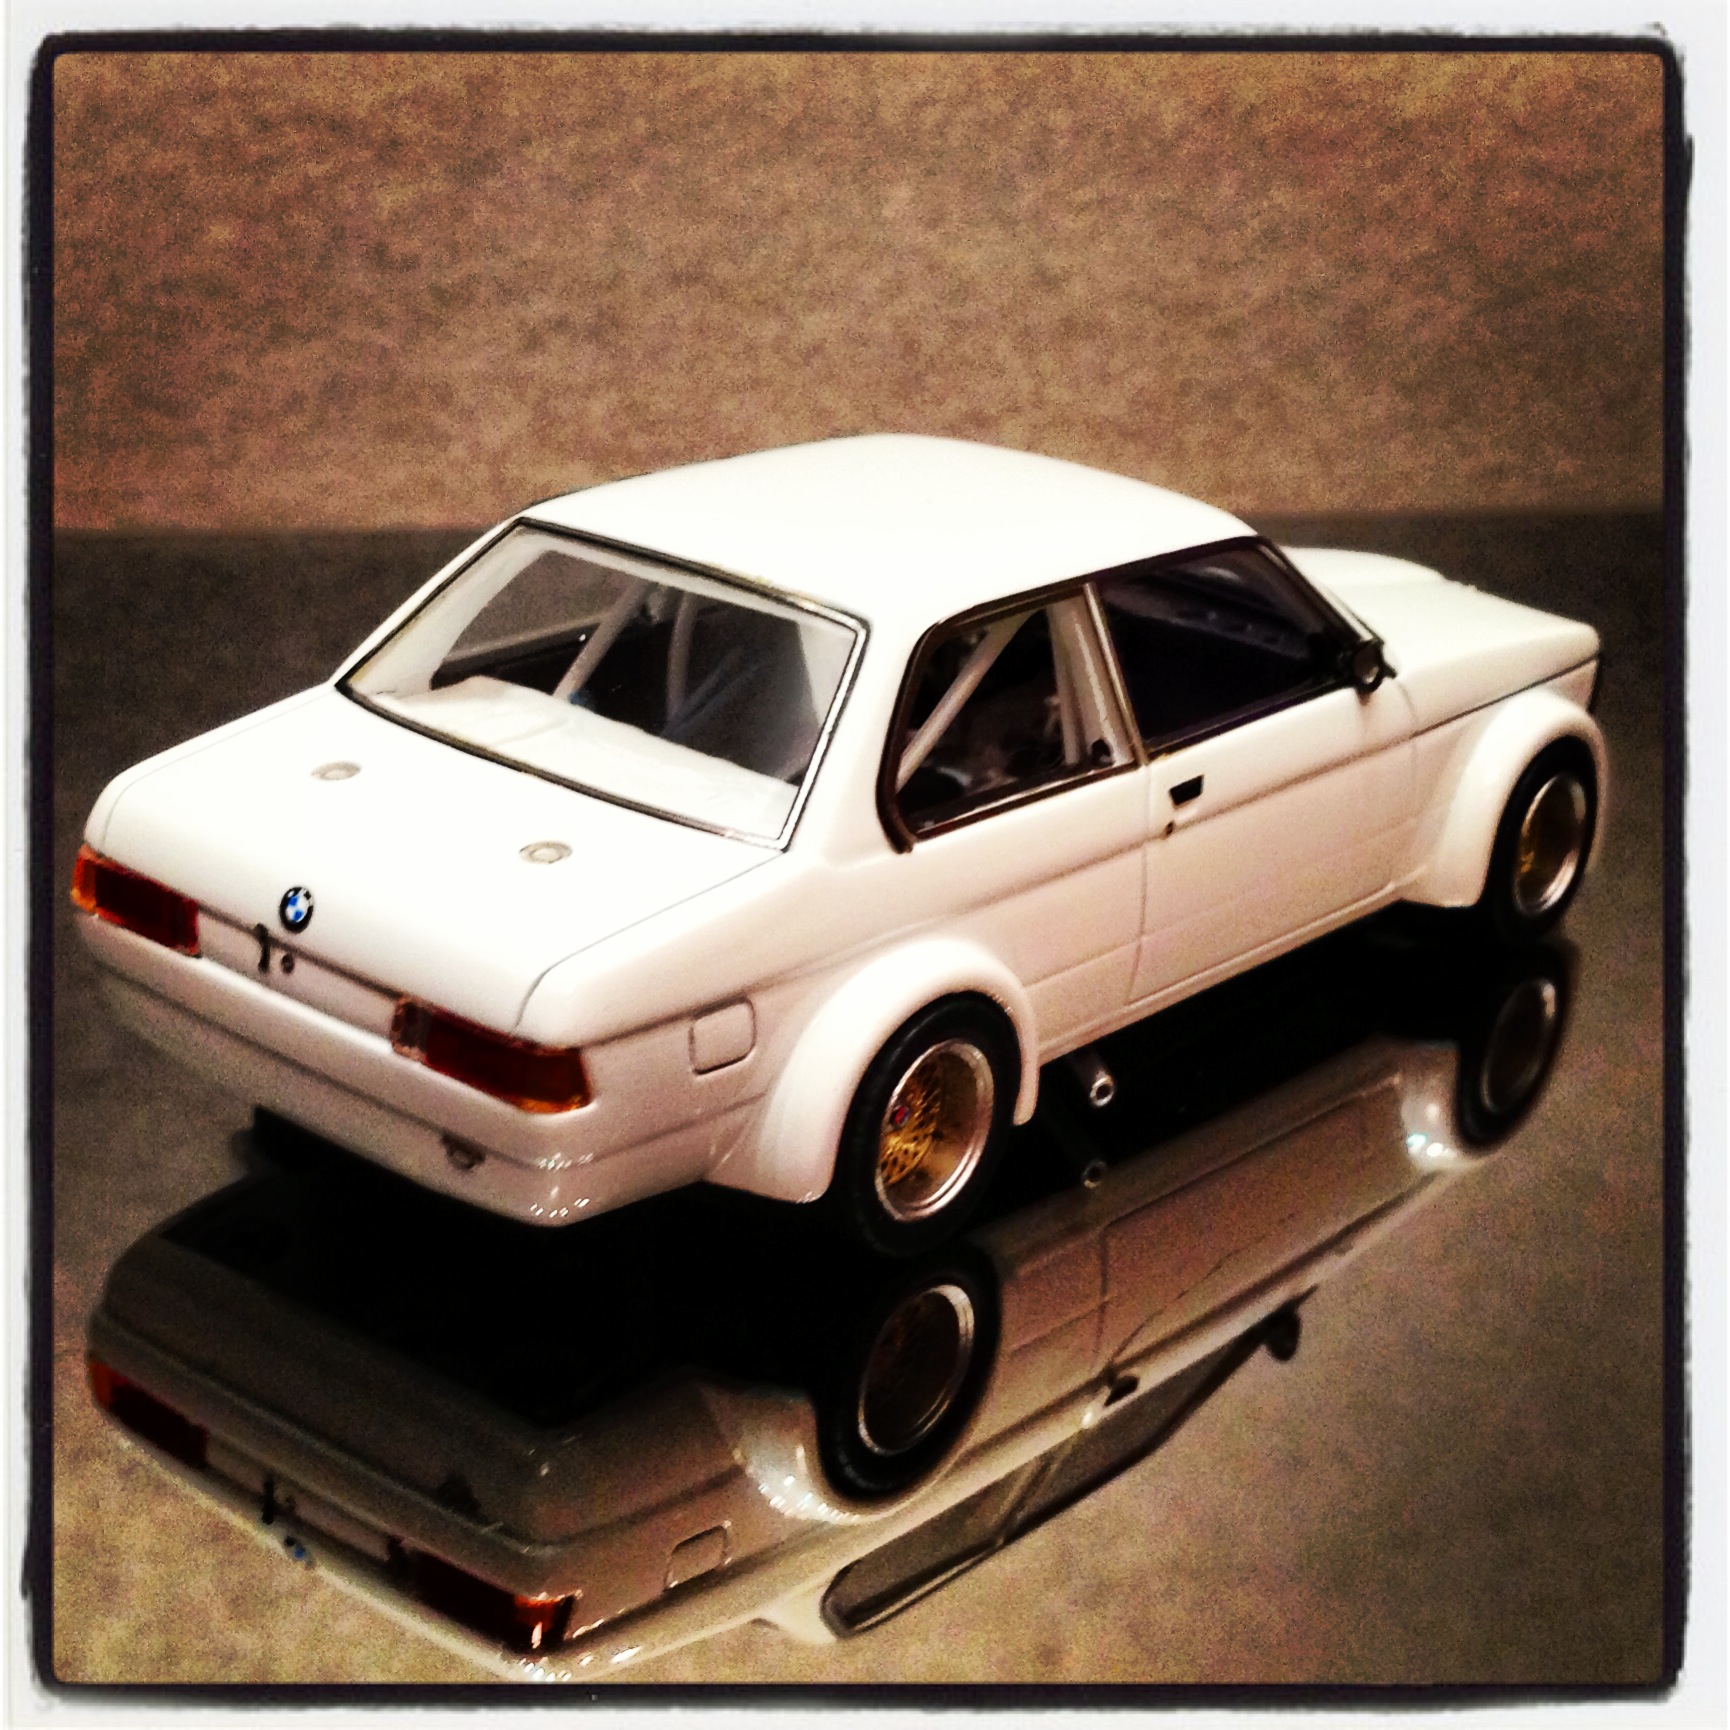 BMW 3 series (E21) "plain body" version, white (neo)